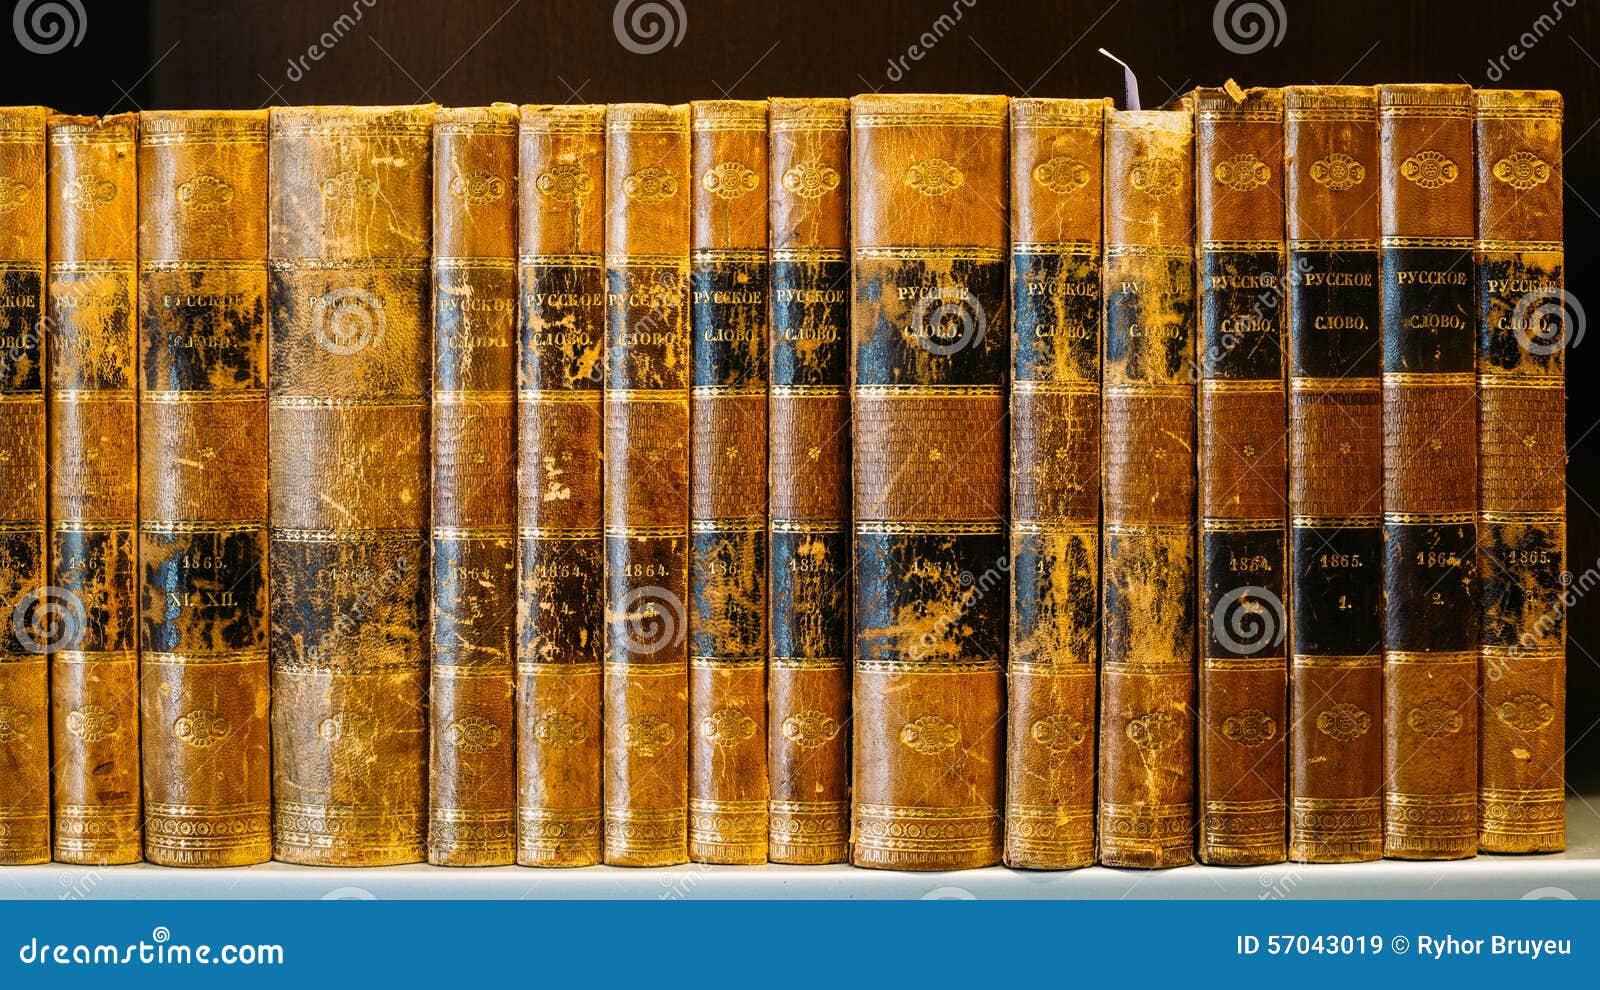 Libros Viejos Del Vintage En Shelfs De Madera En Biblioteca Imagen de